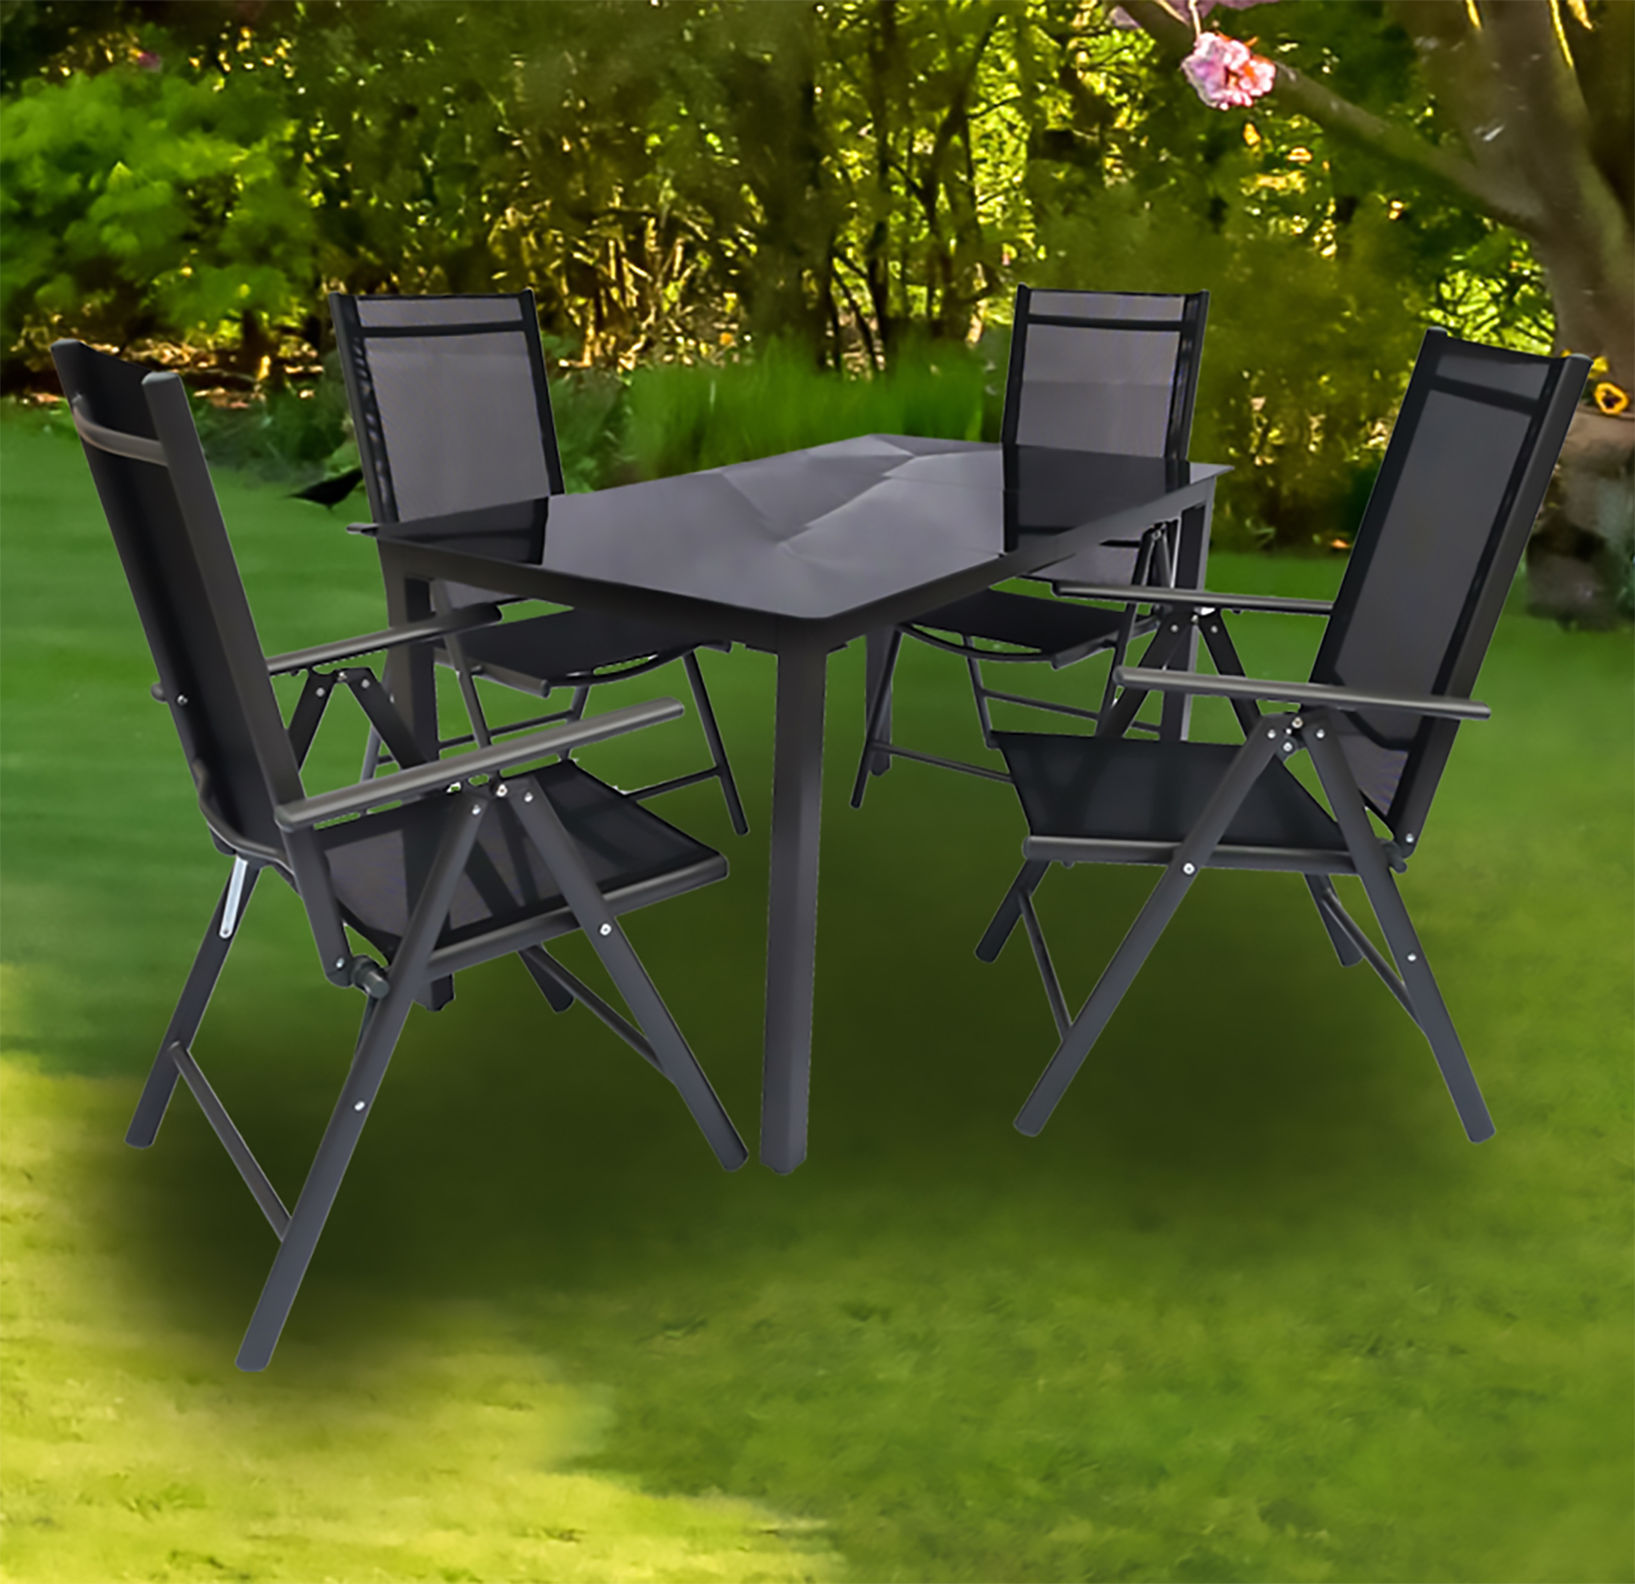 VCM Alu Gartenmöbel Sitzgruppe Set 140x80 Schwarzglas Farbe: Anthrazit,  Ausführung: Tisch + 6 Stühle | Weltbild.de